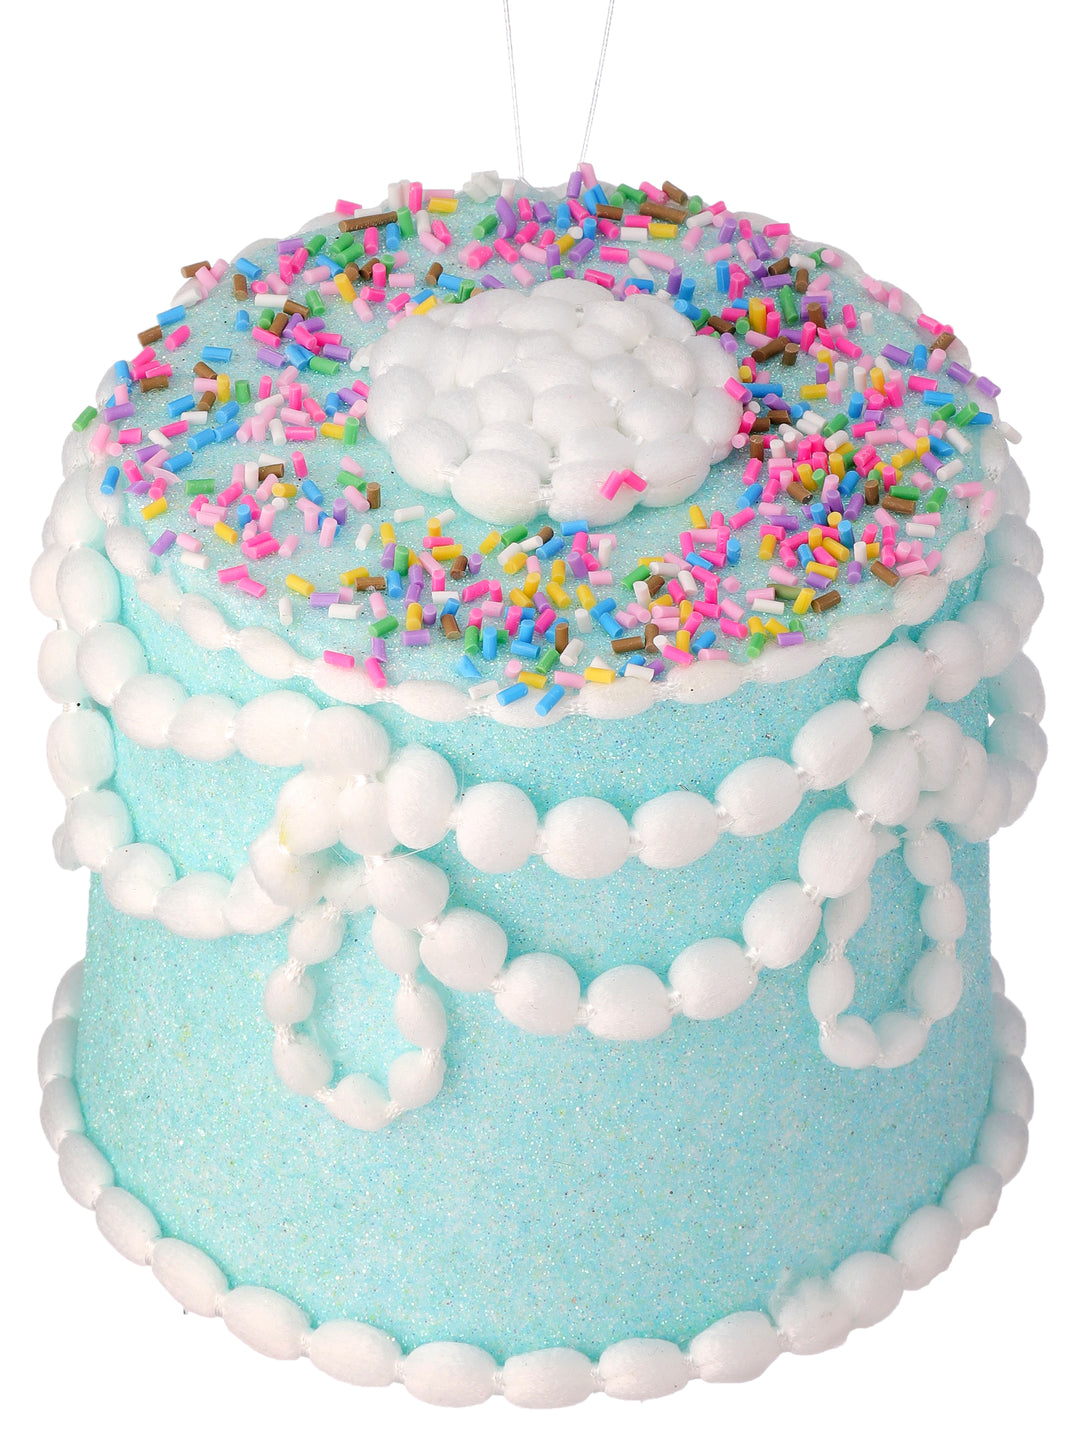 Regency 5" Pastel Candy Cake in Blue